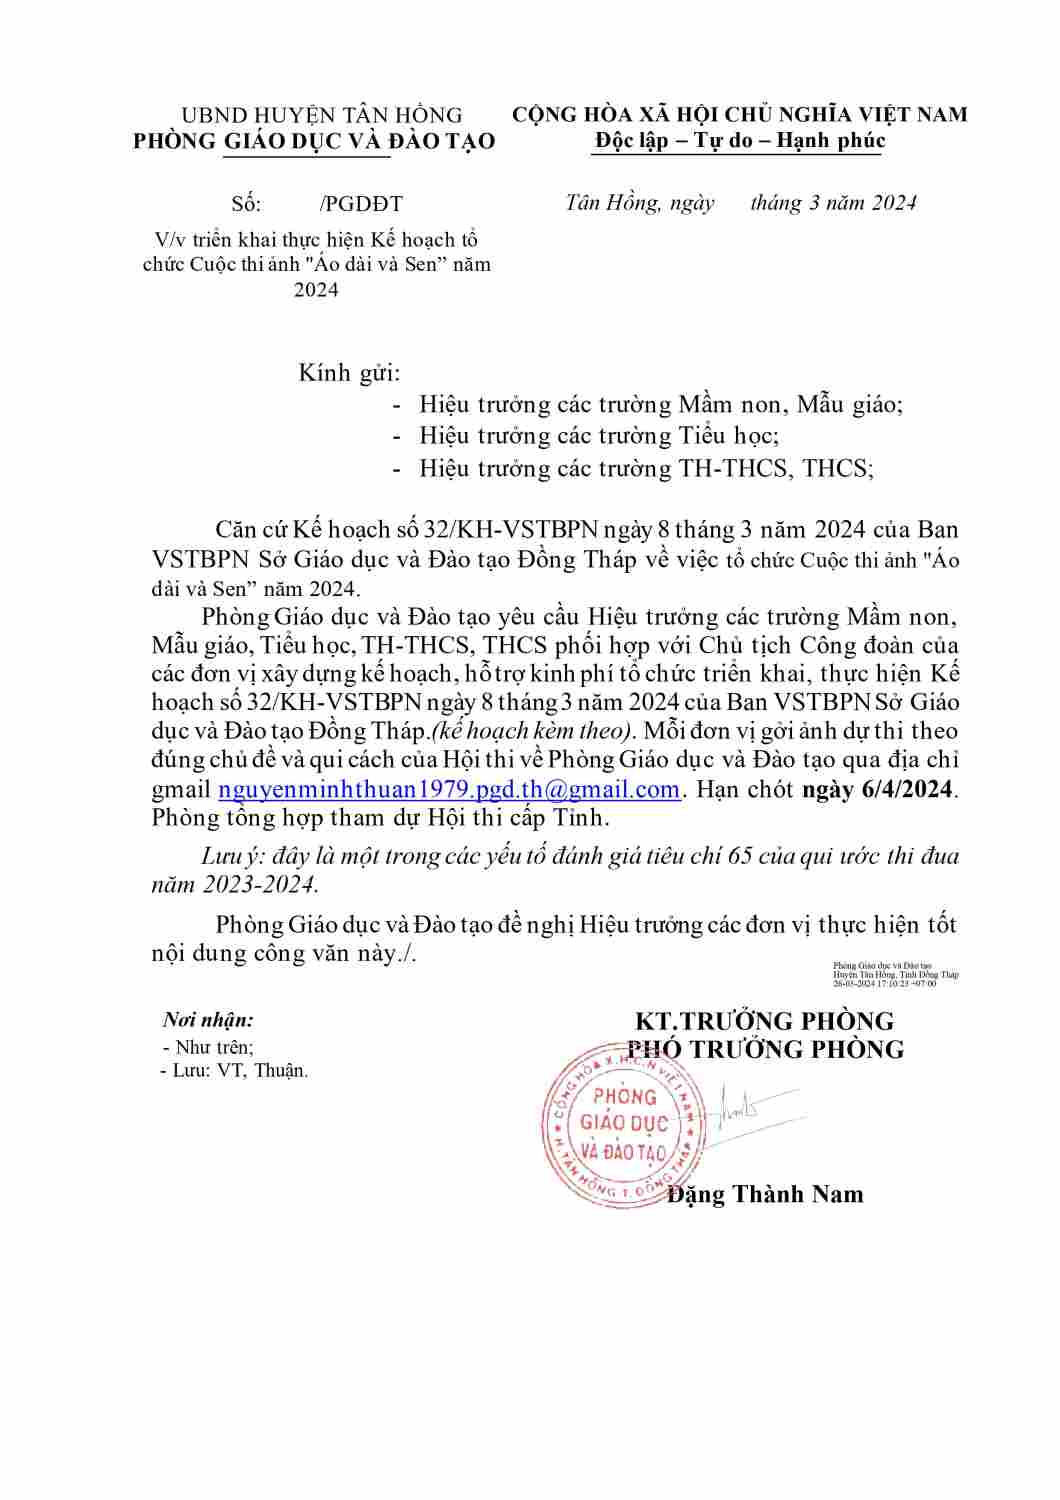 Copy of CONG VAN TRIEN KHAI KE HOACH HOI THI AO DAI VA SEN 2024